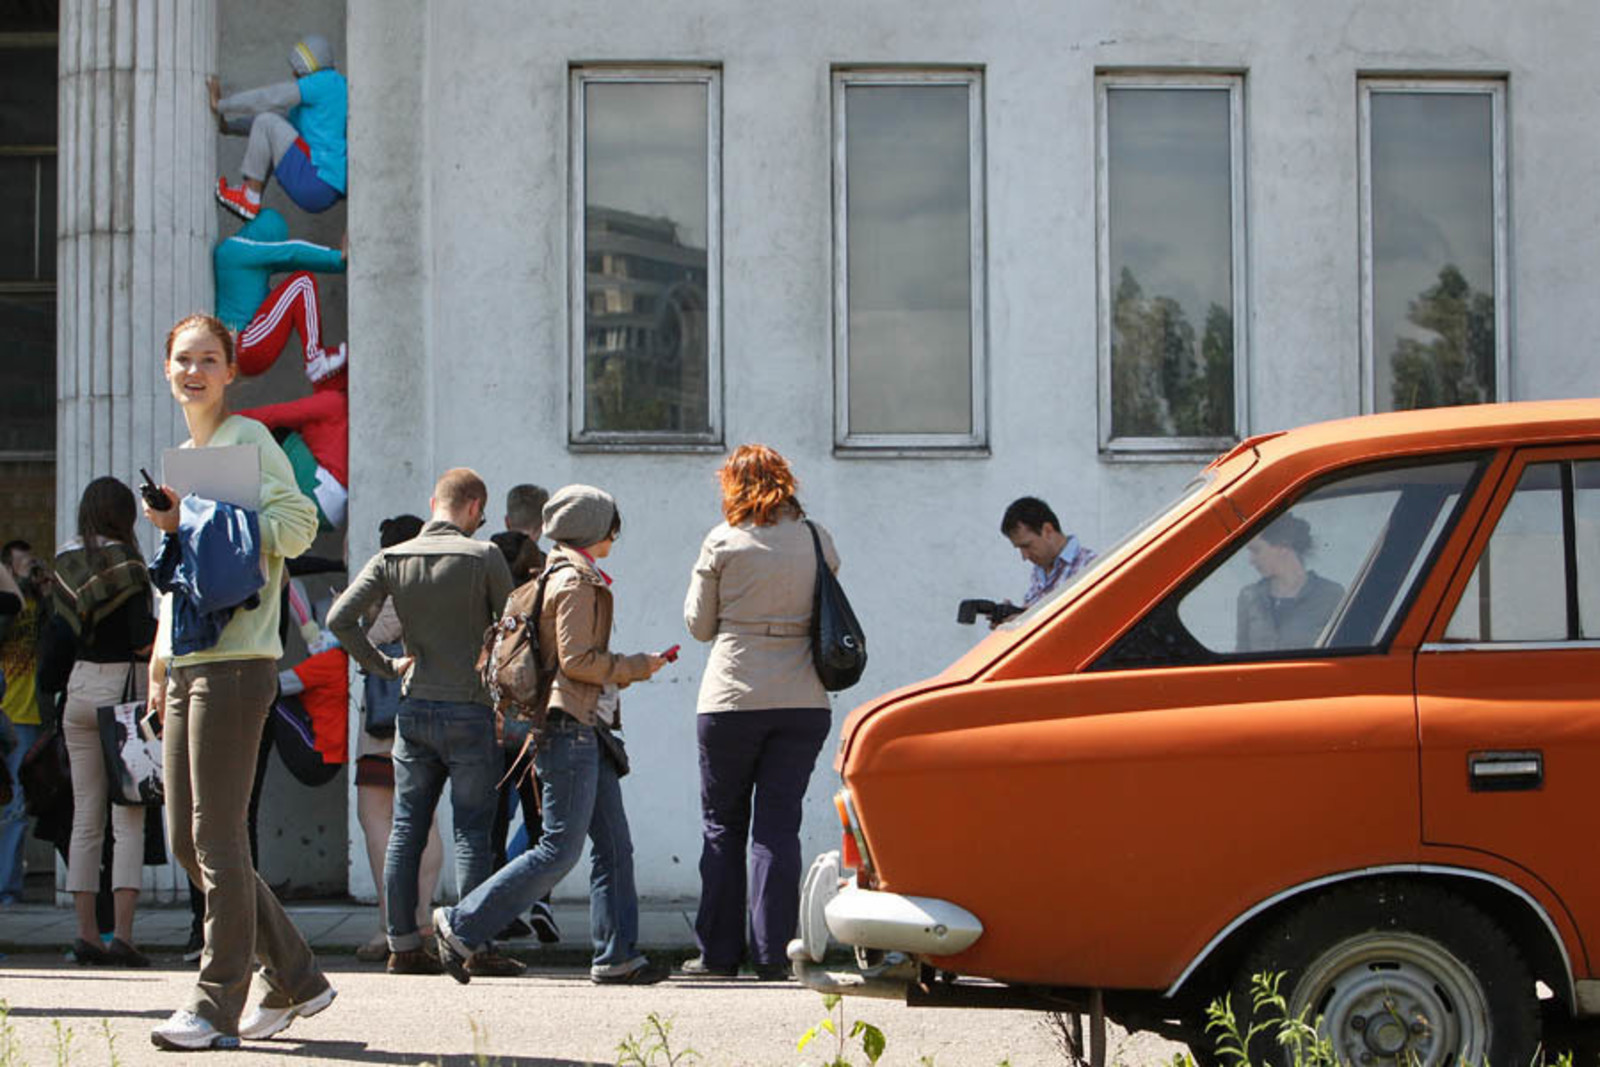 Garage Center for Contemporary Culture/Denis Novikov